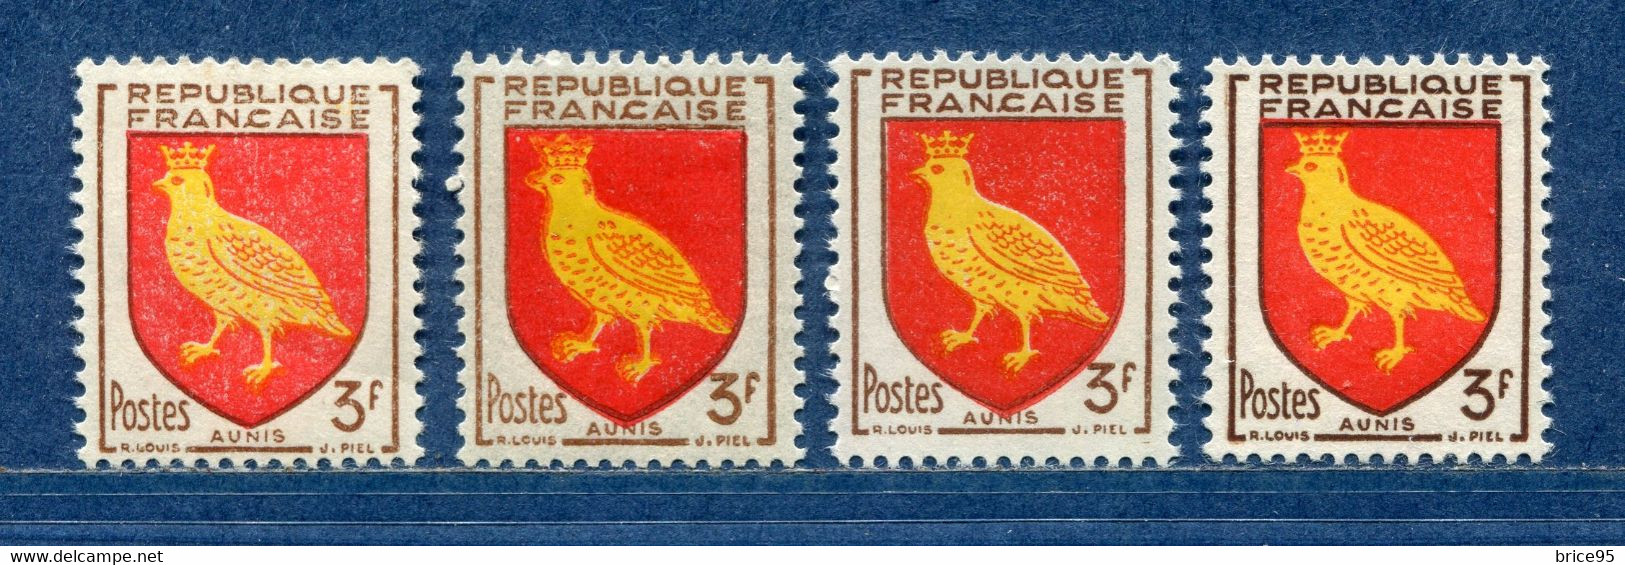 ⭐ France - Variété - YT N° 1004 - Couleurs - Pétouilles - Neuf Sans Charnière - 1954 ⭐ - Unused Stamps